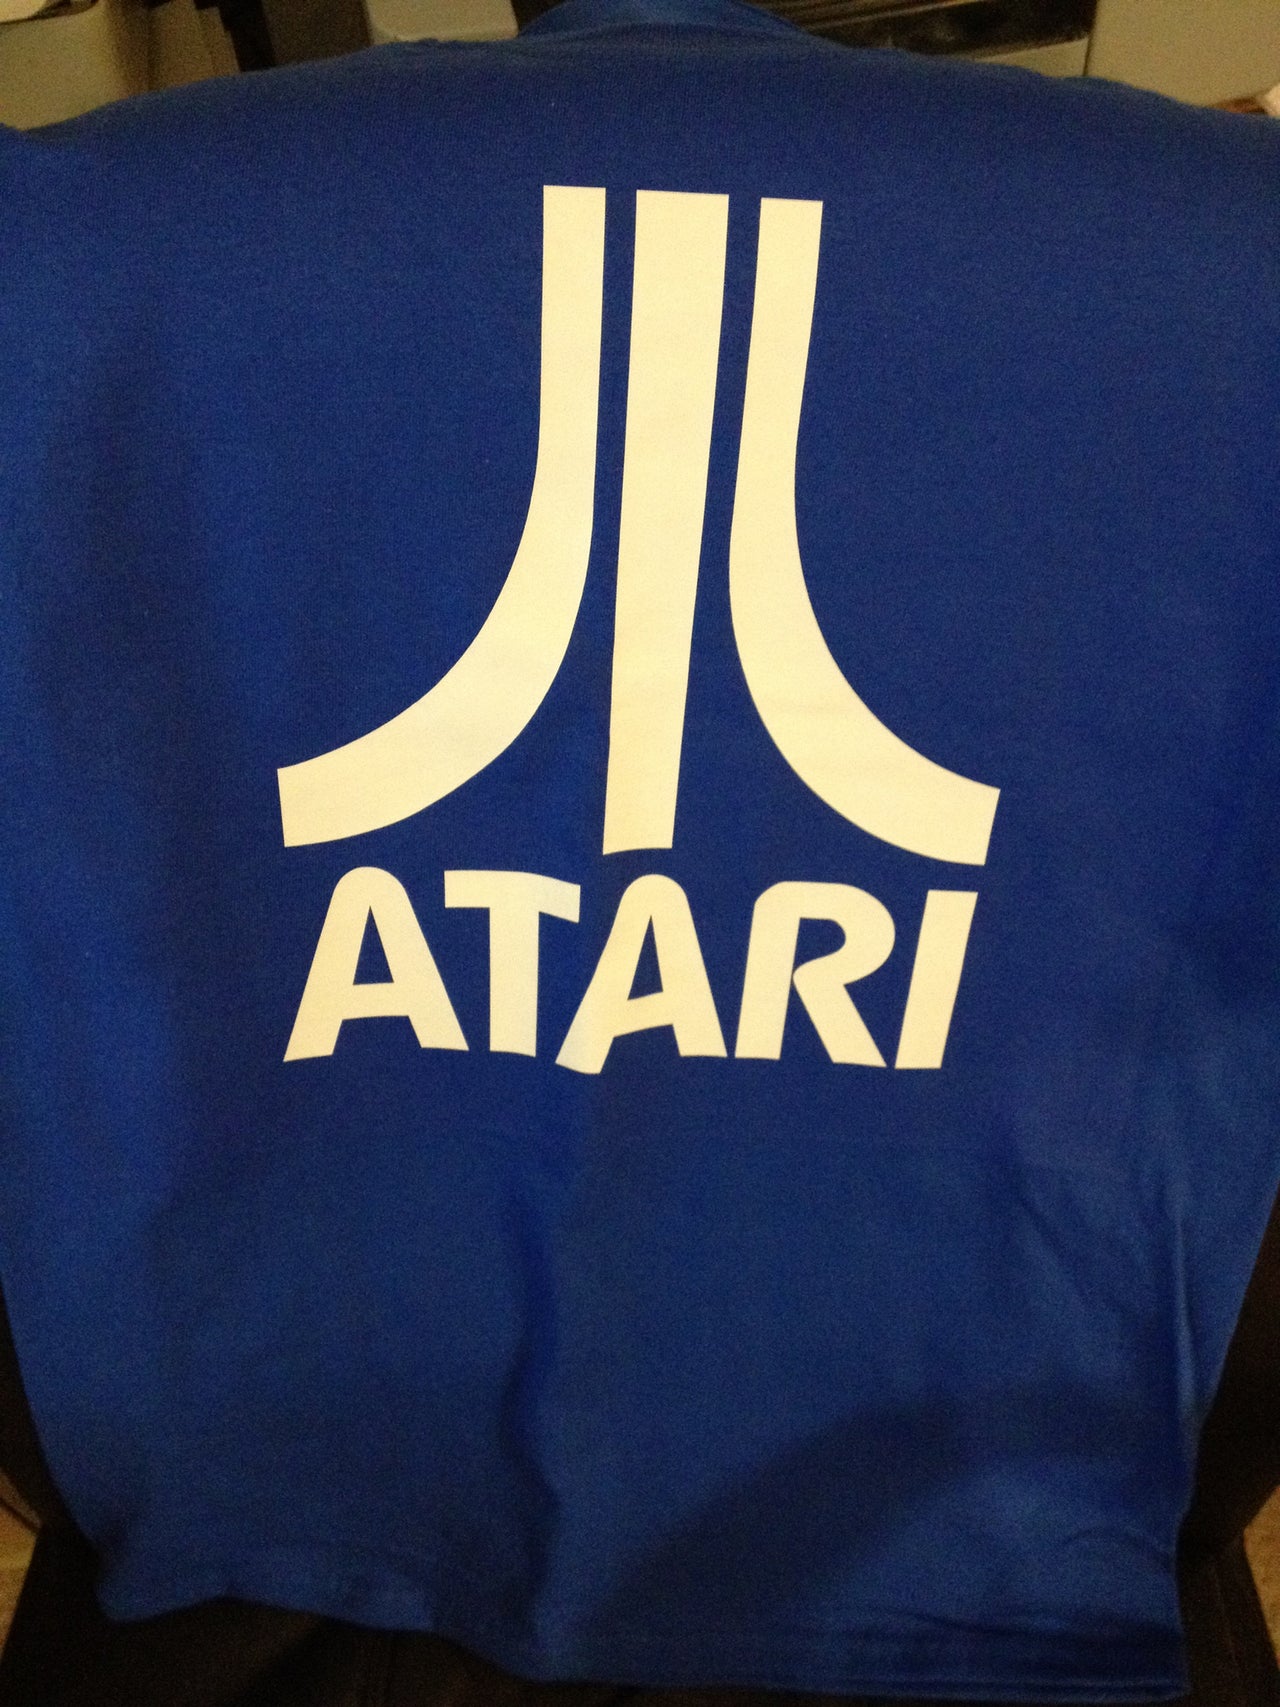 Atari Logo Tshirt: Blue With White Print - TshirtNow.net - 4